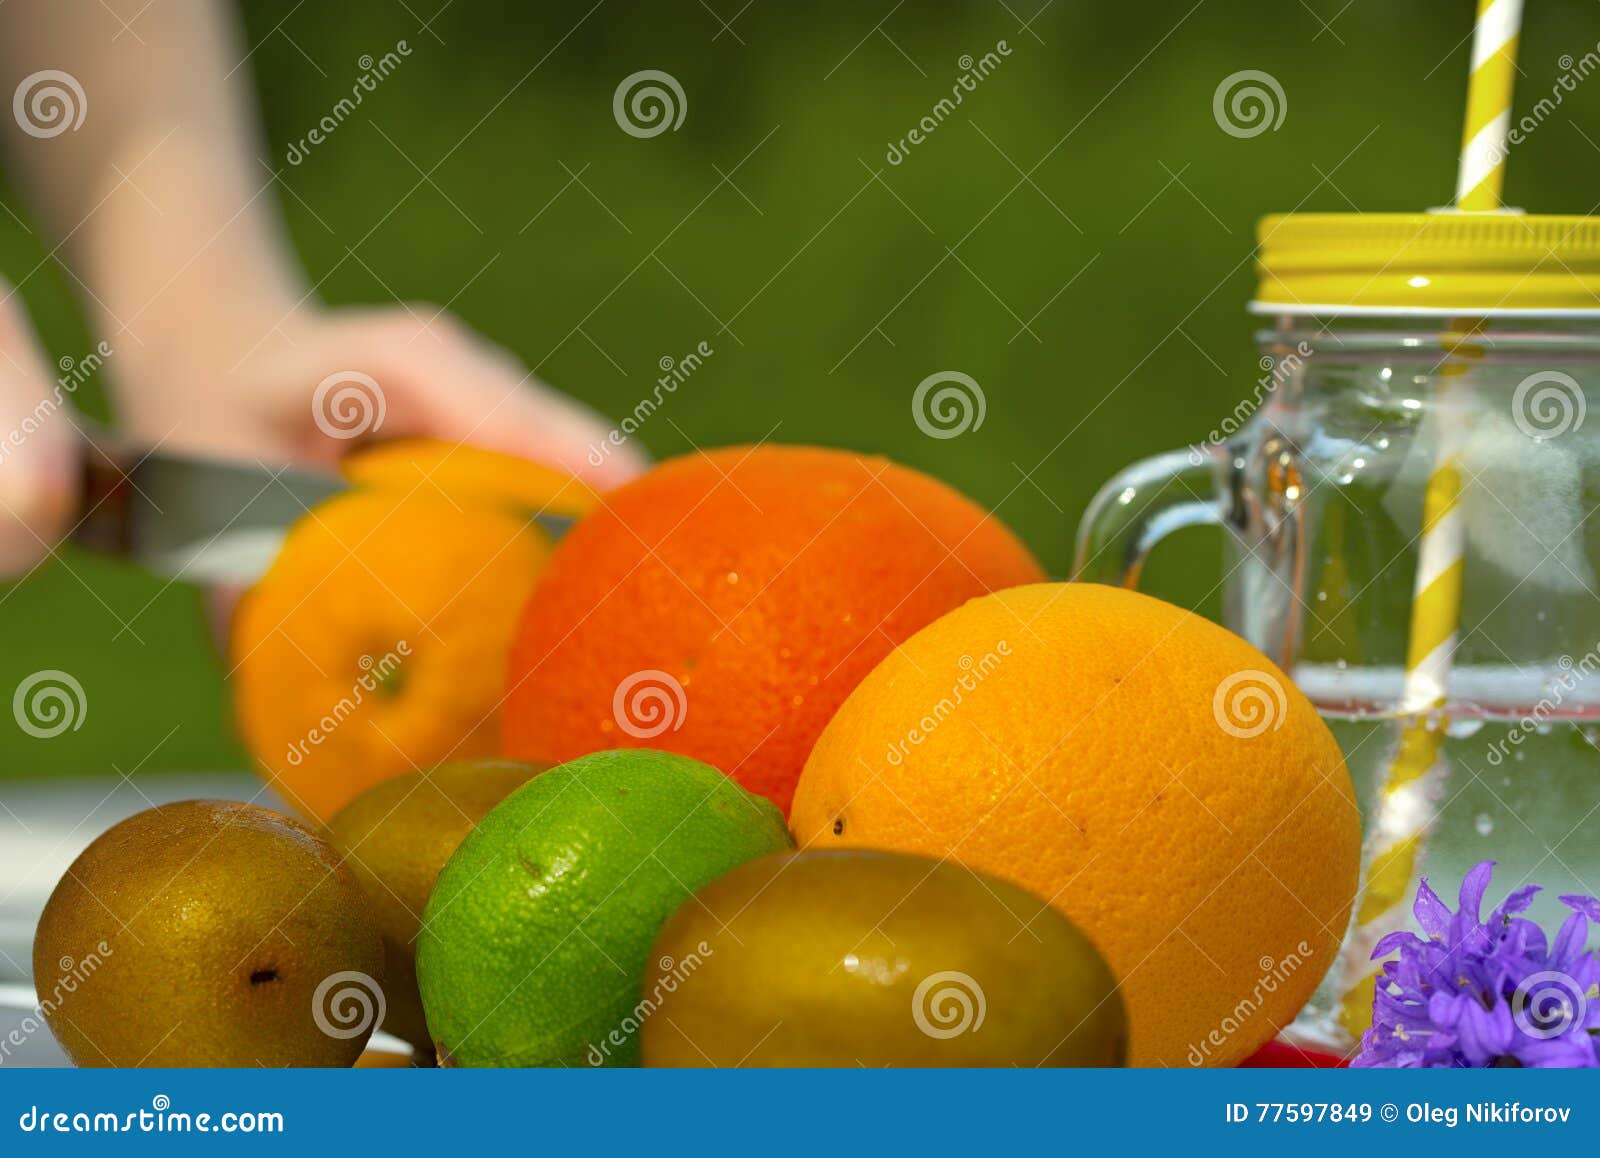 Fruchtlimonade im Glas stockbild. Bild von wasser, orange - 77597849